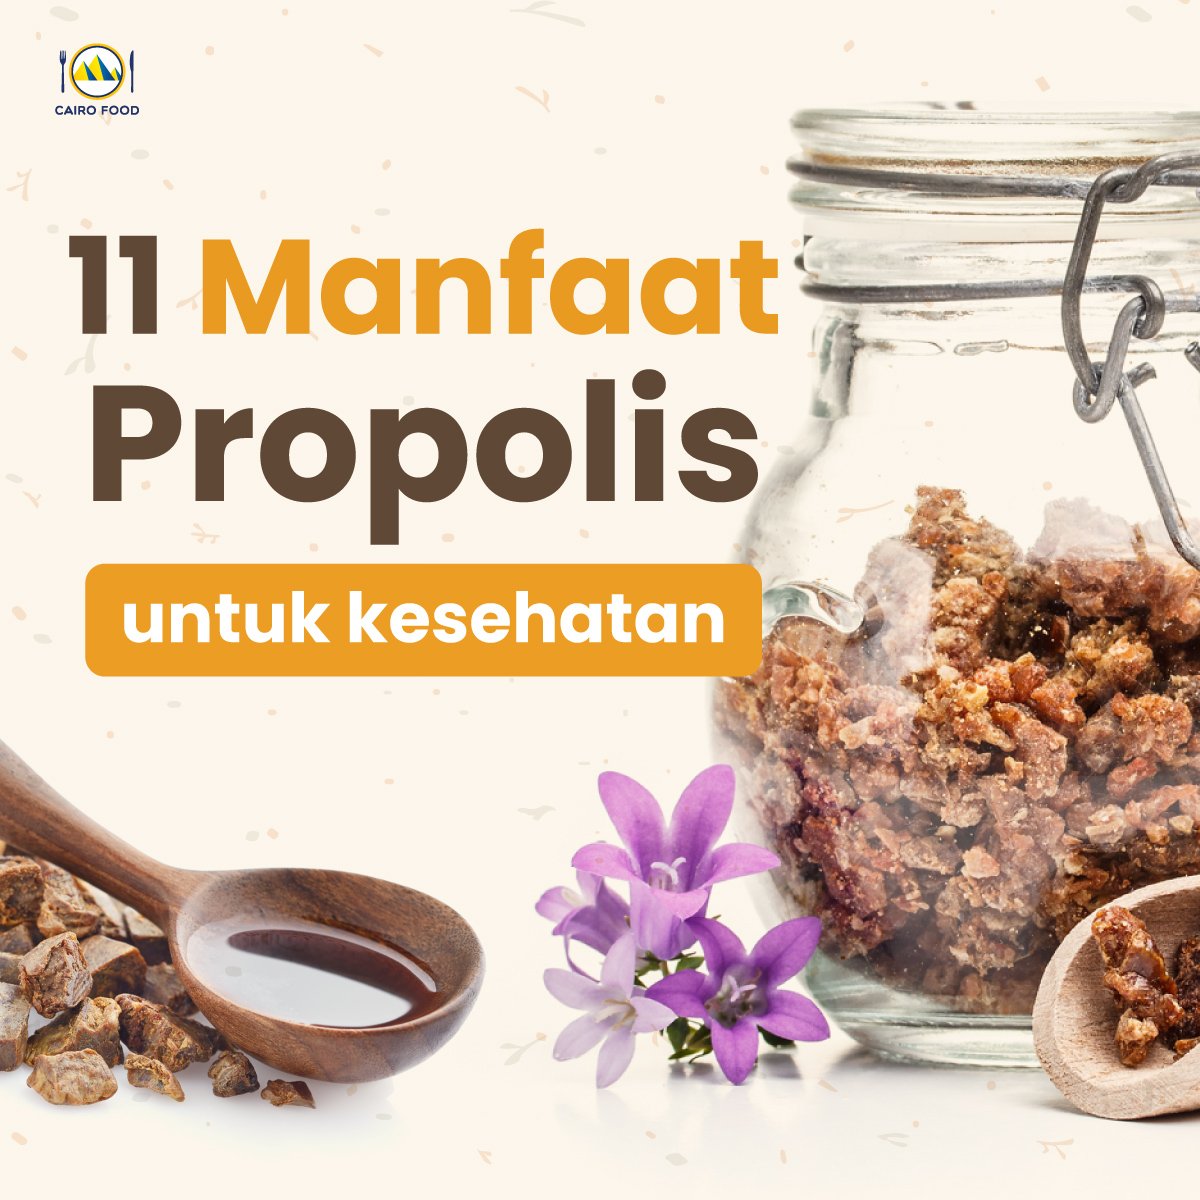 11 manfaat propolis untuk kesehatan